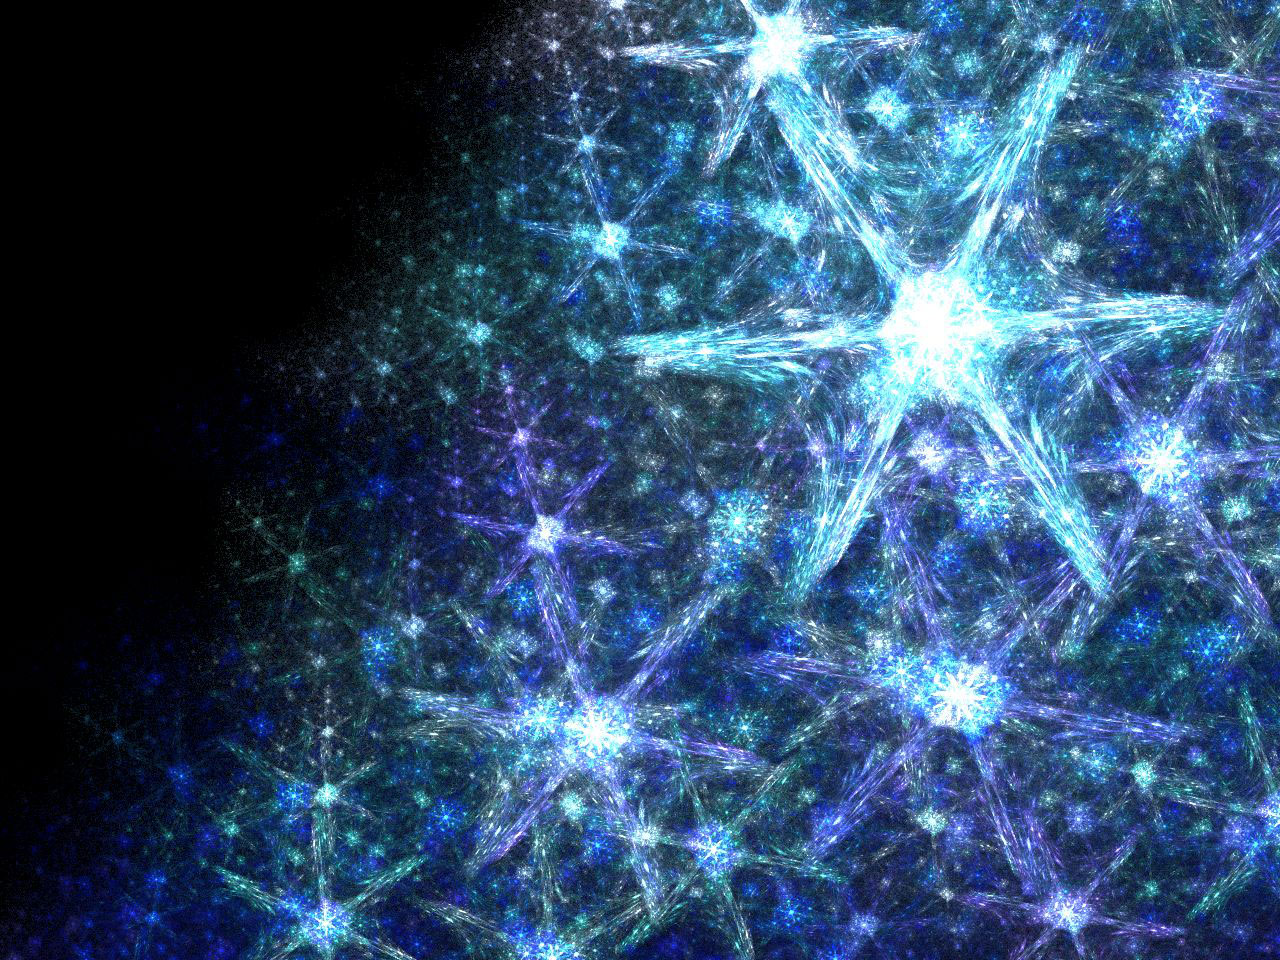 chemistry-behind-each-snowflake